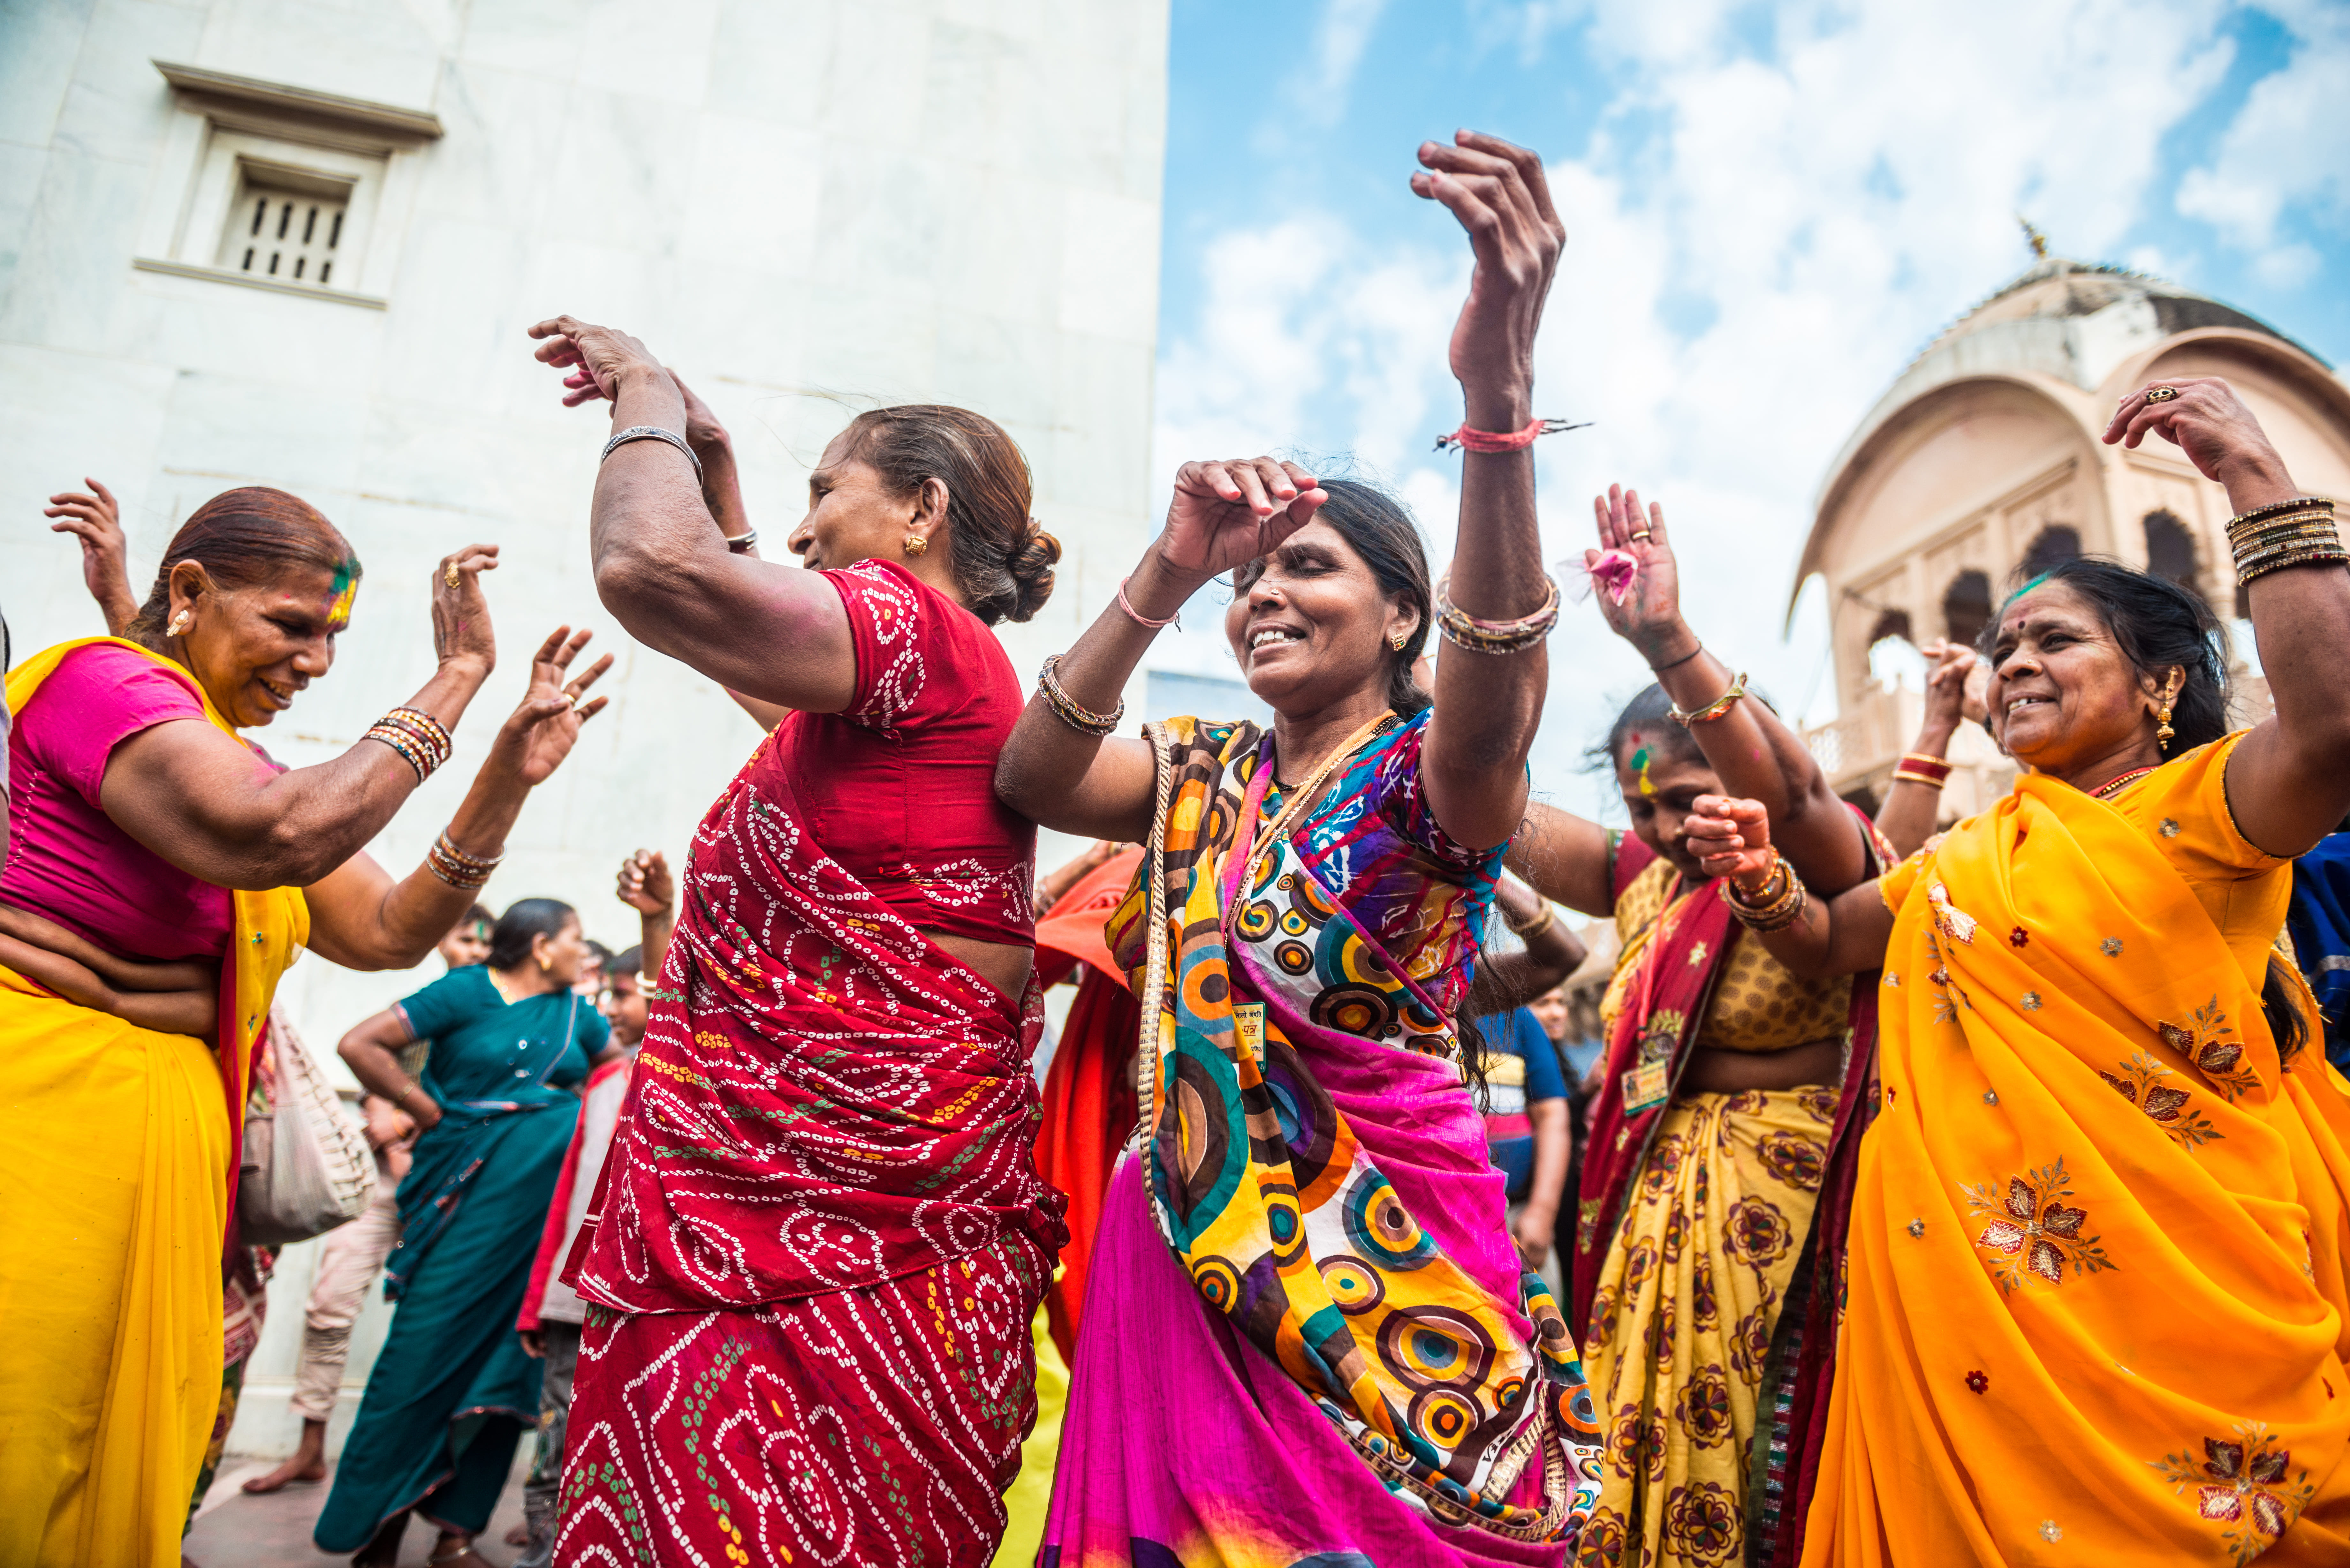 Tanzende Frauen im Sari in den Reisearten, wie Kultur erleben werden hier dargestellt